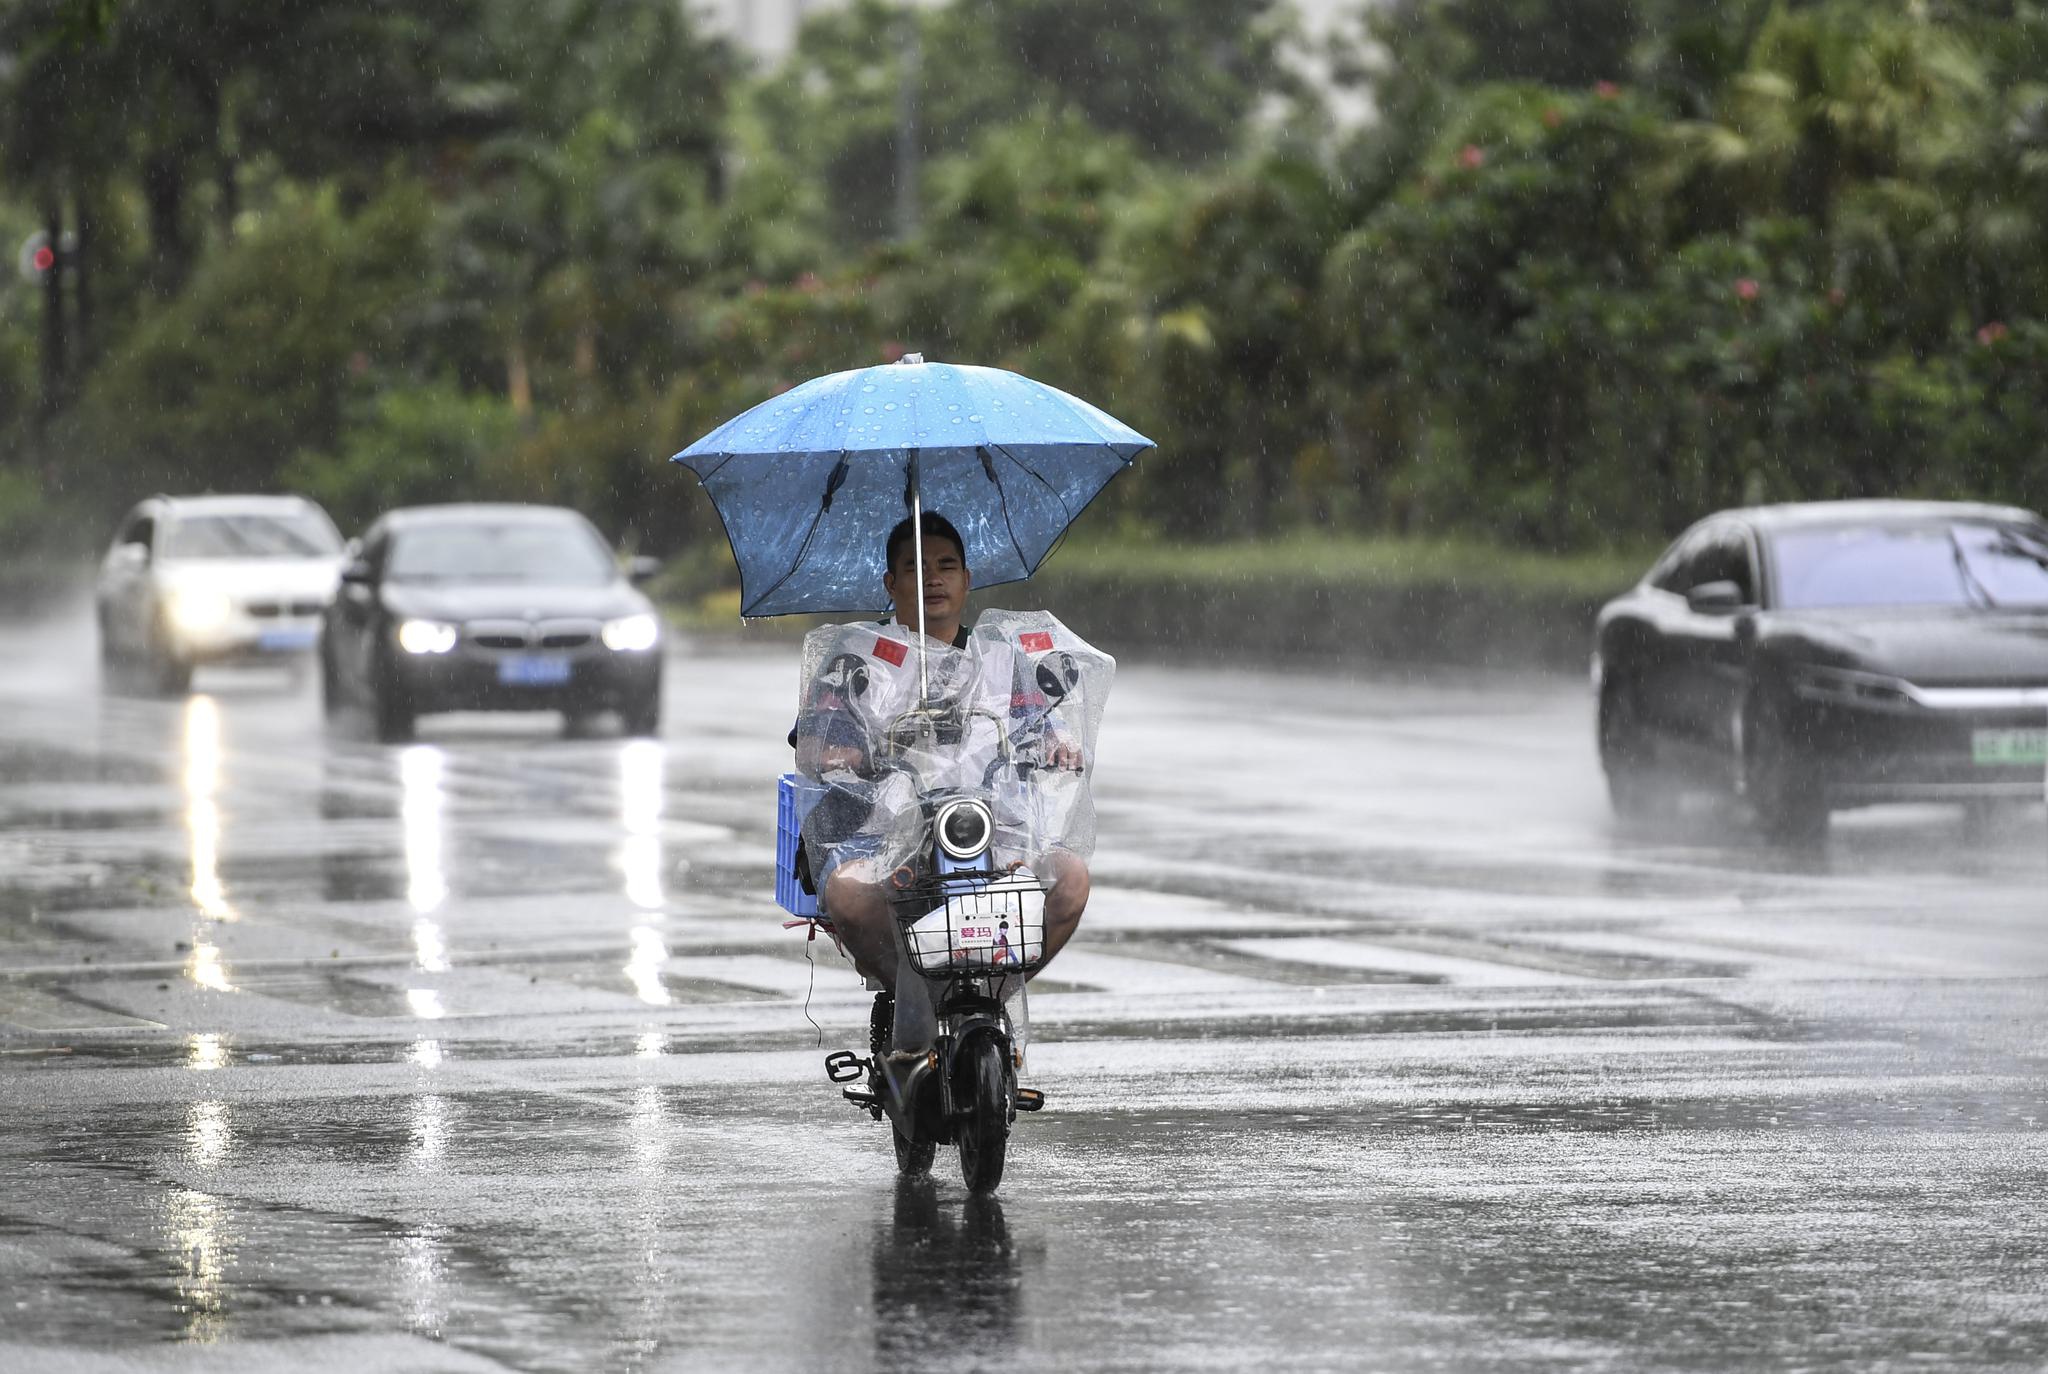 7月19日,居民骑着电动车在雨中前行.新华社记者 毛思倩 摄